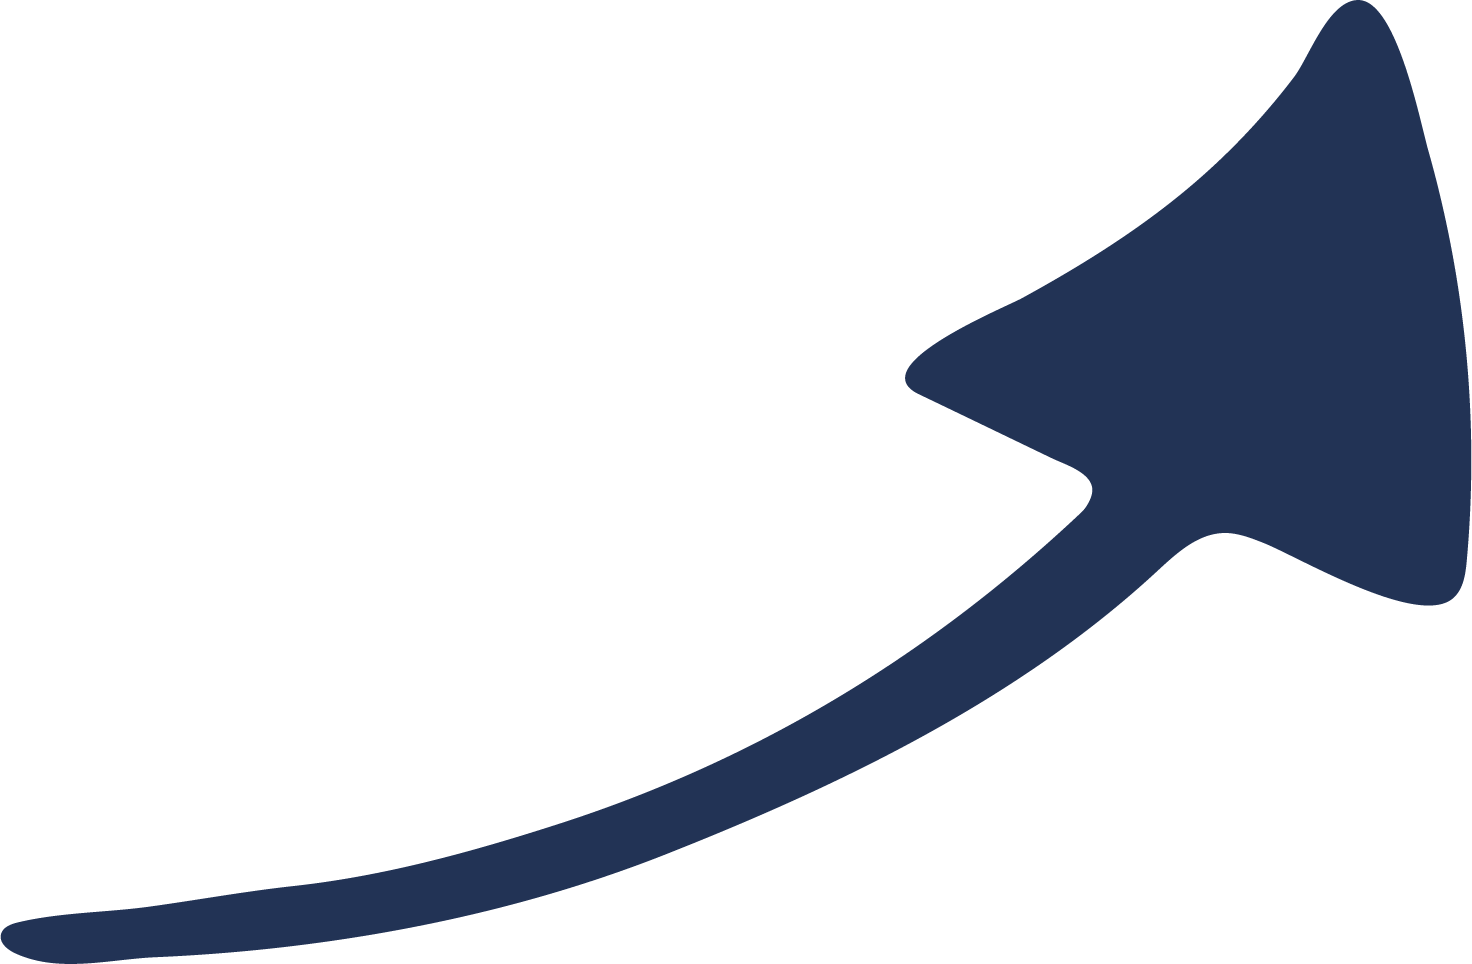 TheCyberPass logo